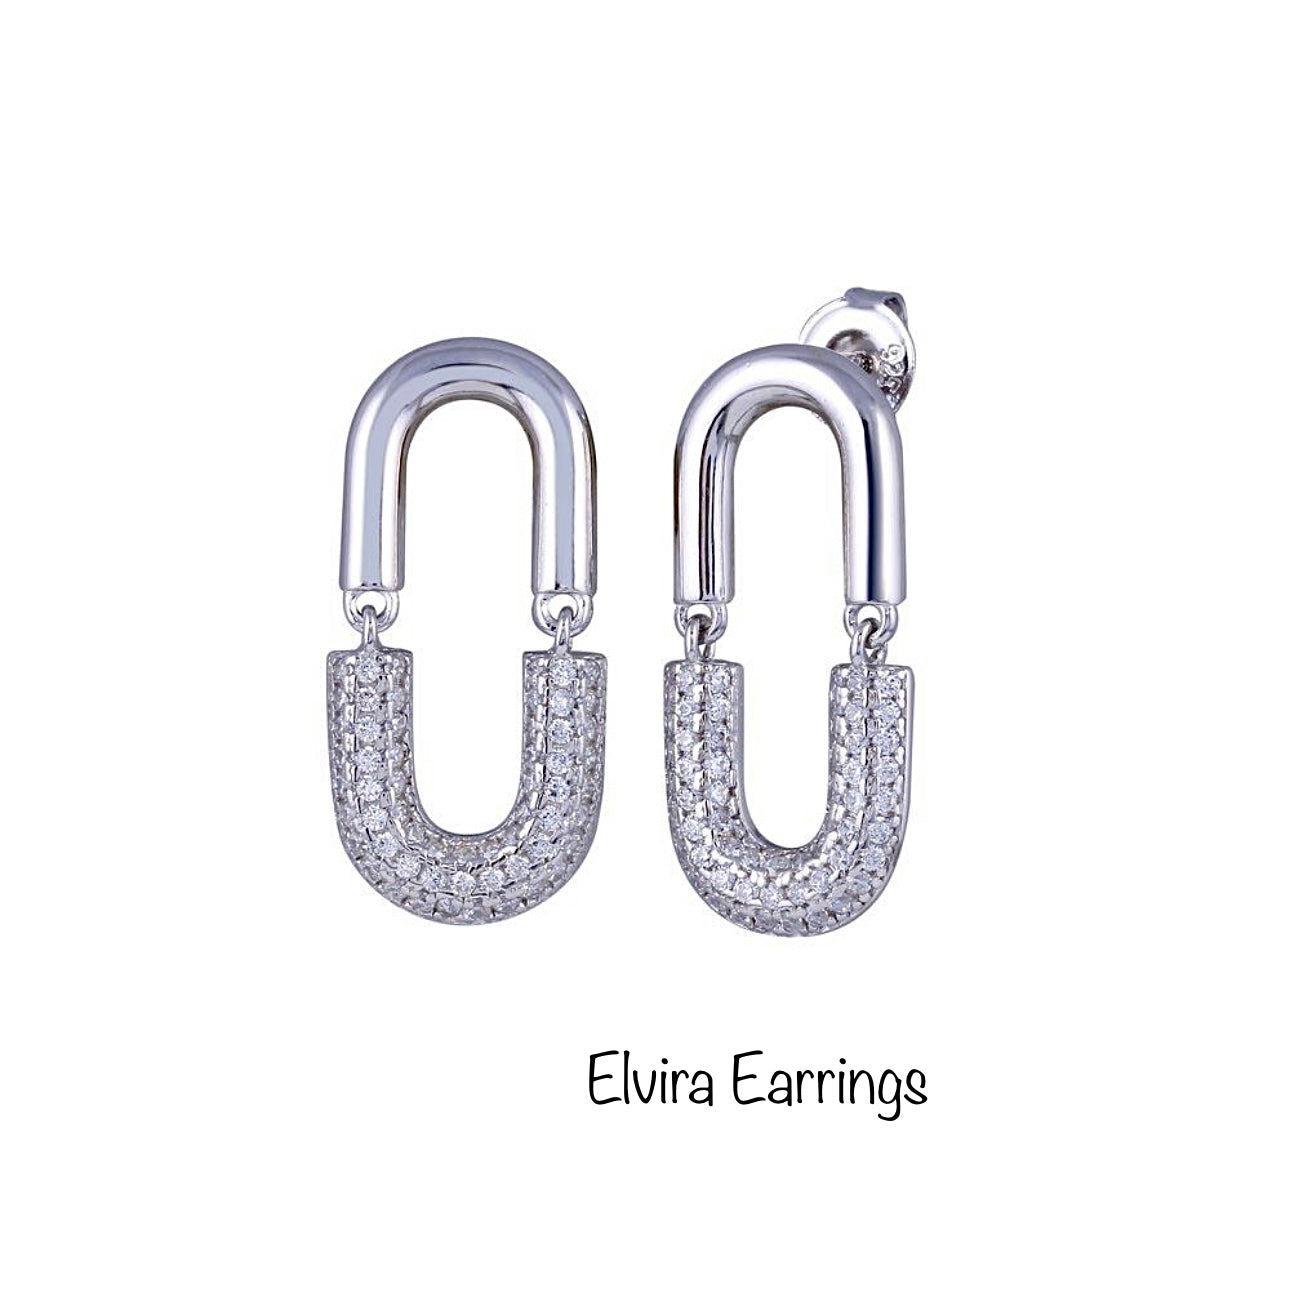 Elvira Earrings